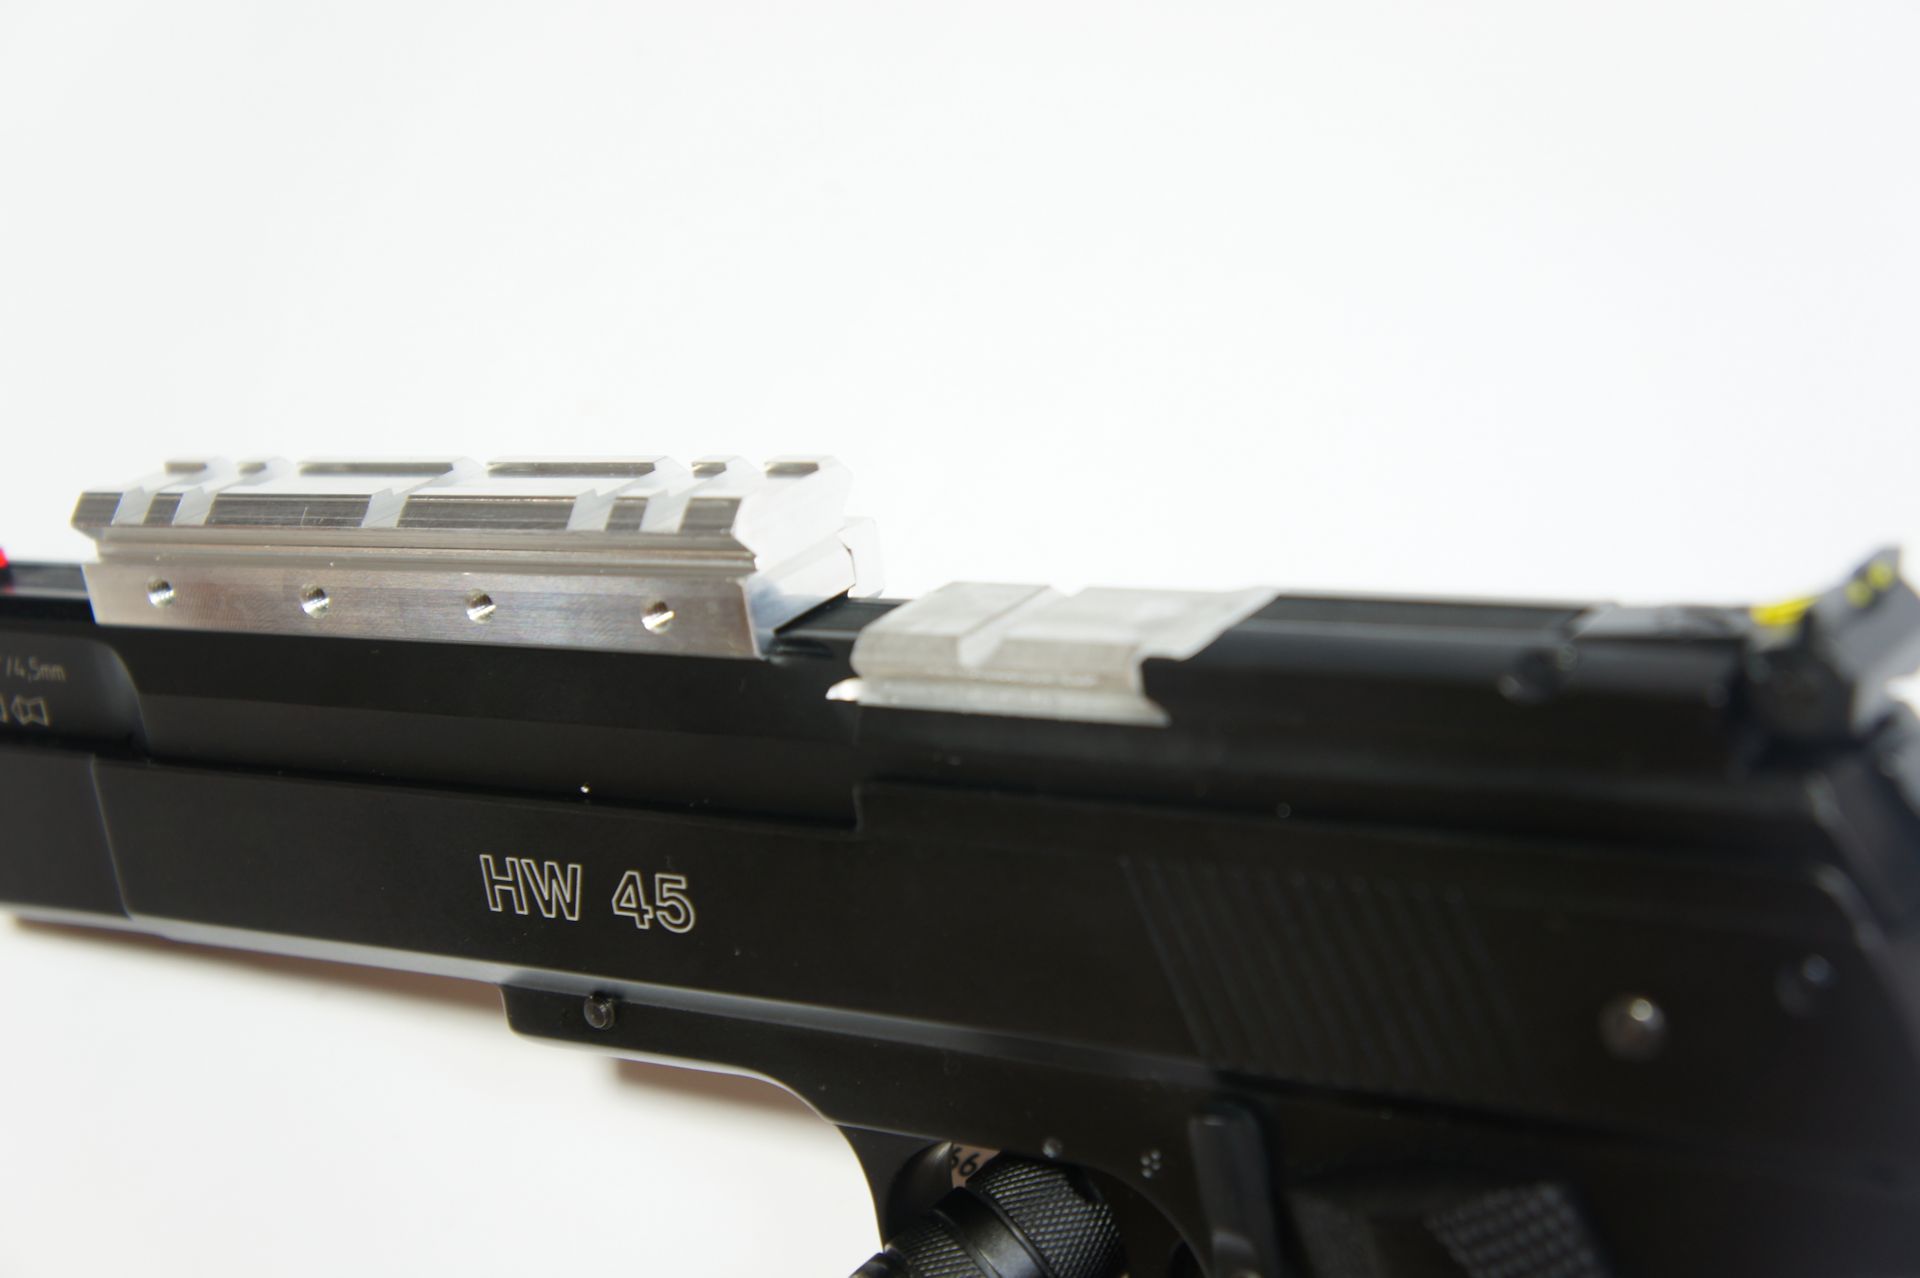 Montagebeispiel einer Montageschiene an einer speziellen Luftpistole HW 45. Im Bildmittelpunkt ist hier gut (hell) zu sehen, wo die Optik an den neuen Modellen direkt und ohne Schiene angebracht werden kann. 